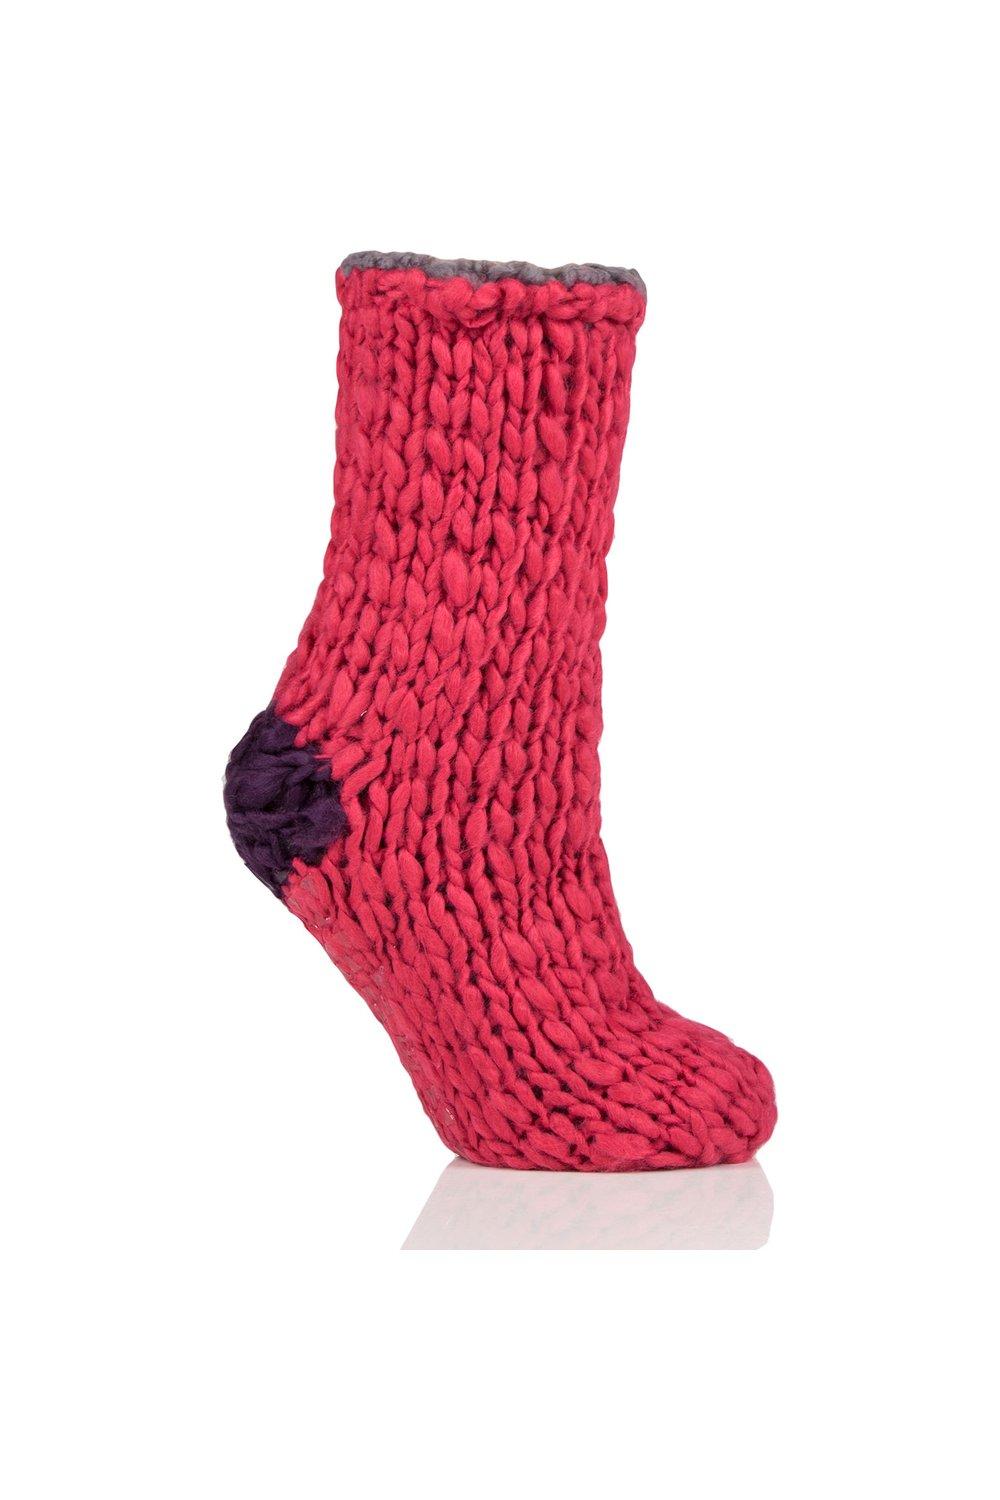 1 Pair Soft Hand Knitted Slipper Socks